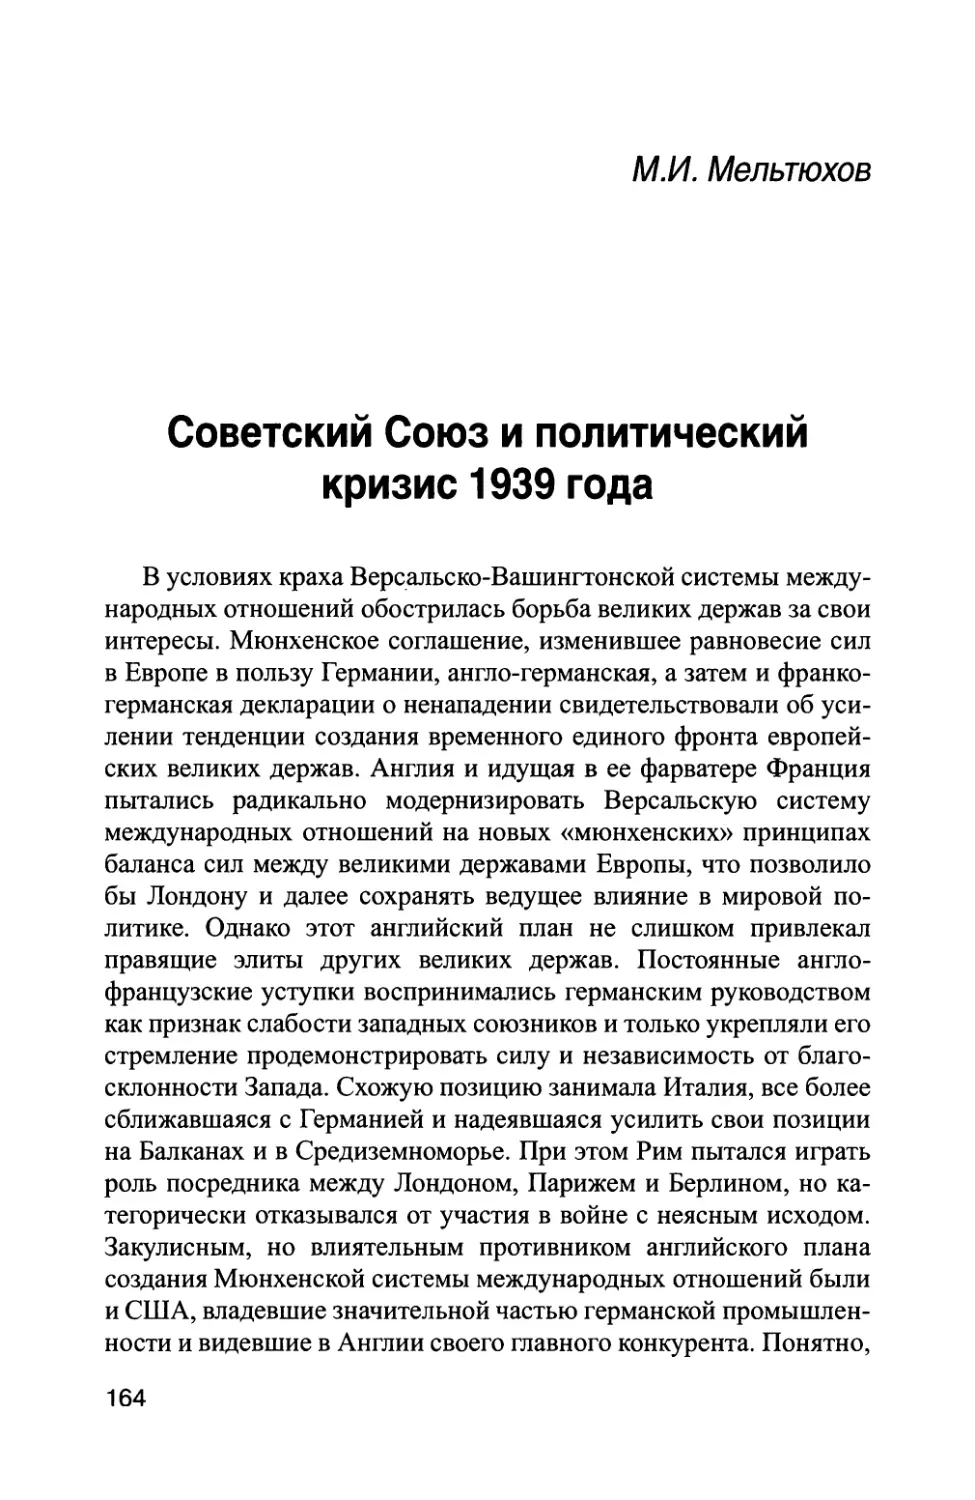 М.И. Мельтюхов. Советский Союз и политический кризис 1939 года